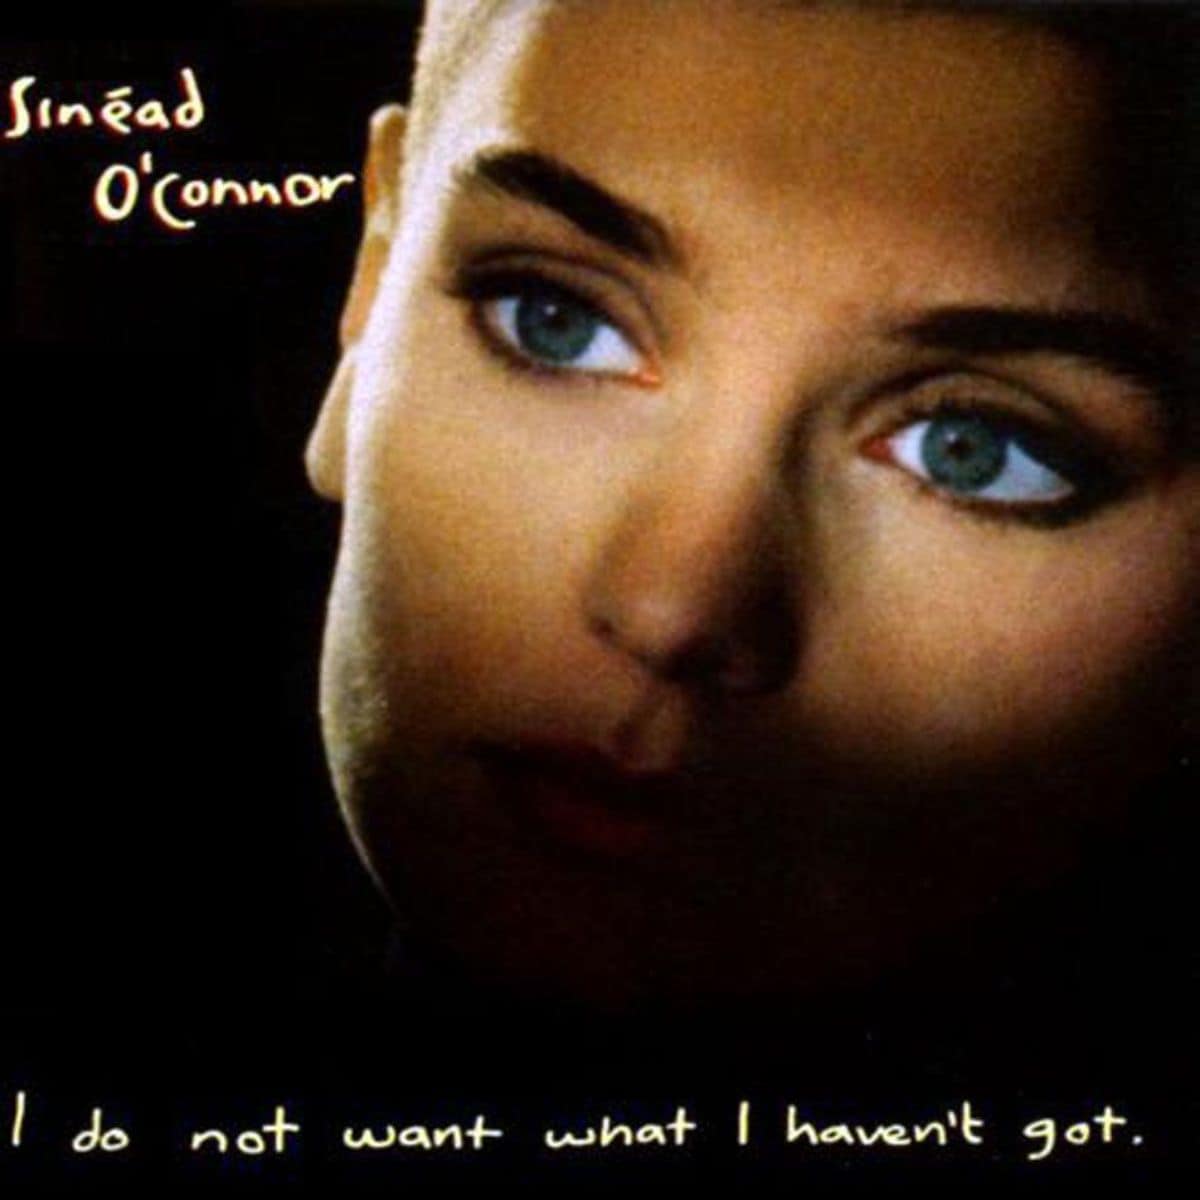 sinead o'connor's album cover